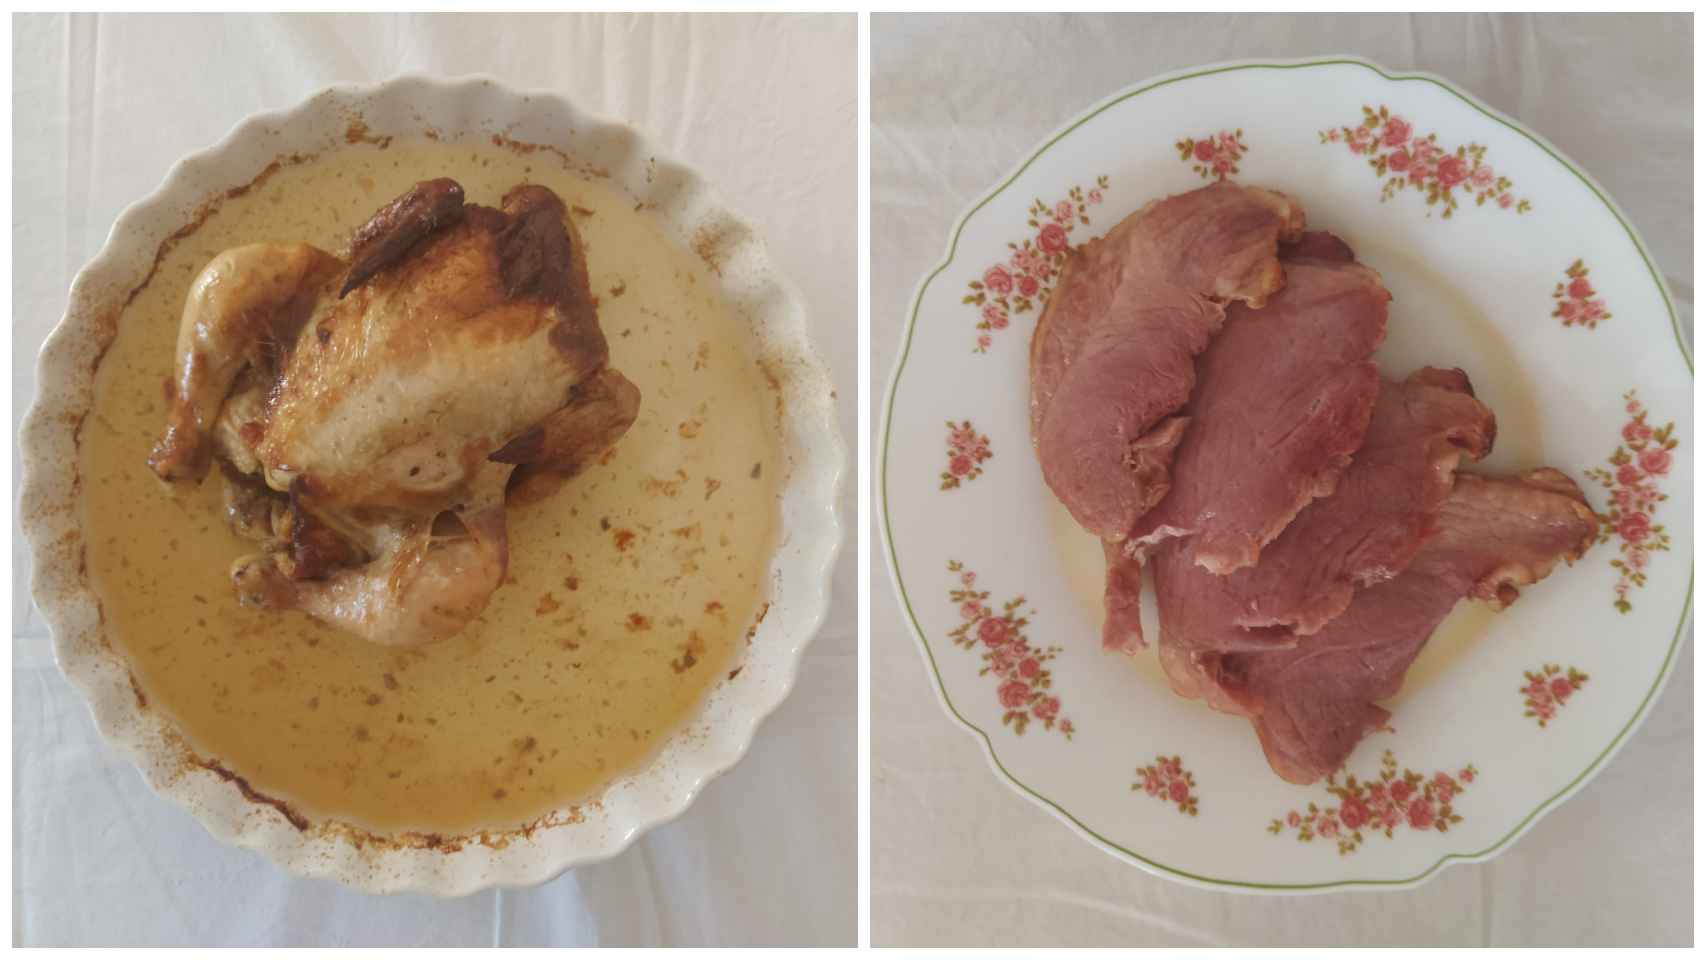 El pollo asado y la paleta de cerdo asada y troceada de Aldi, ya calentados y servidos.